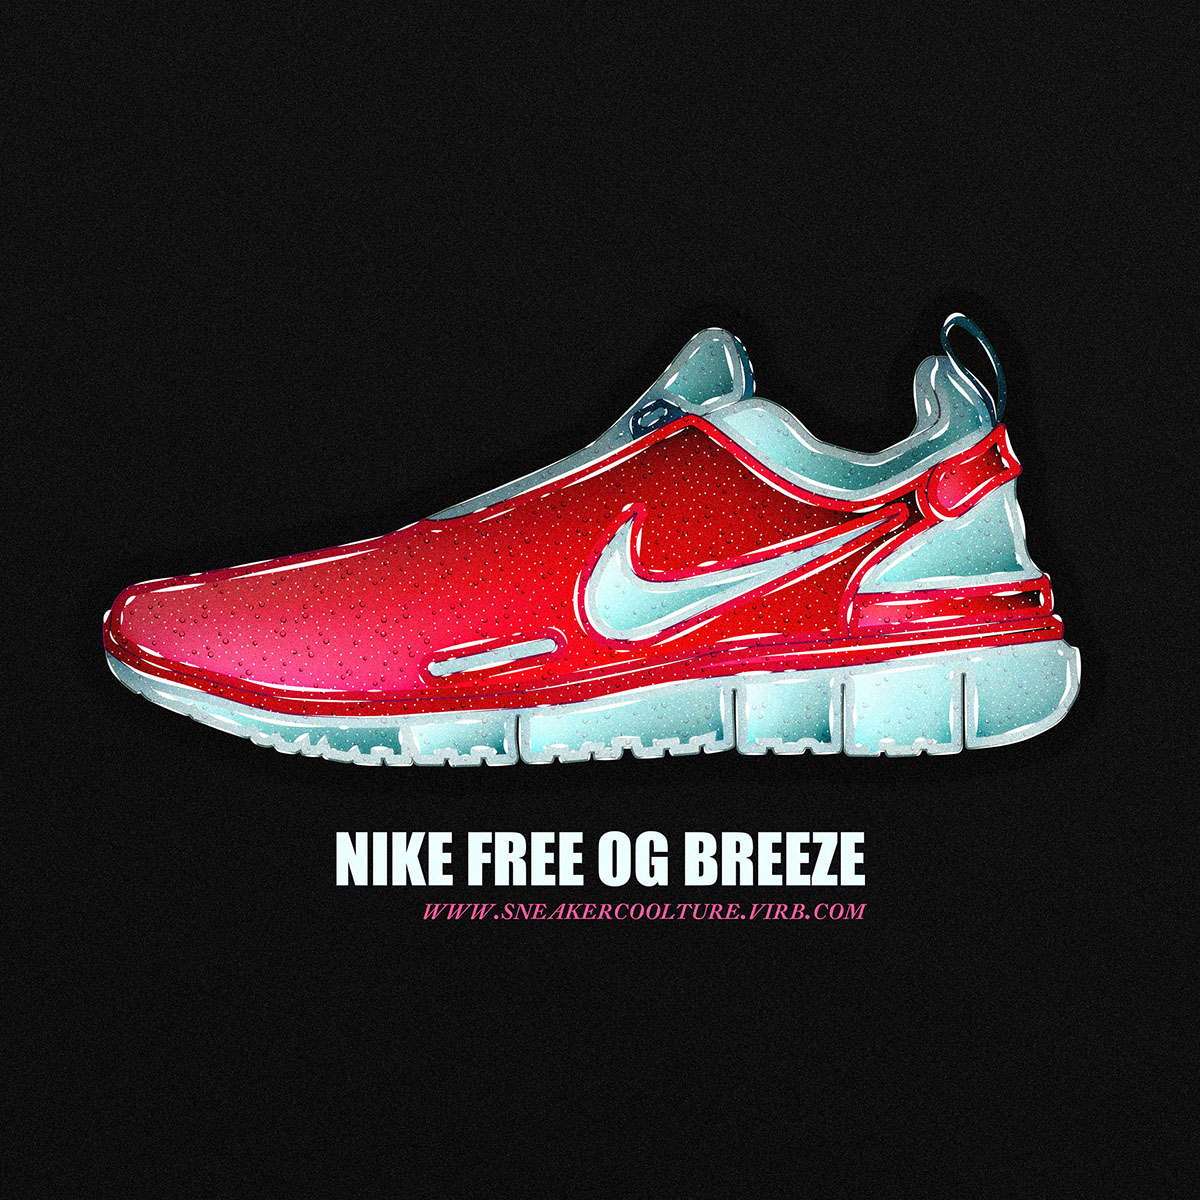 sneakers Weekly Nike adidas New Balance free Wallpapers air max Yeezy II air jordan MakeItNYC